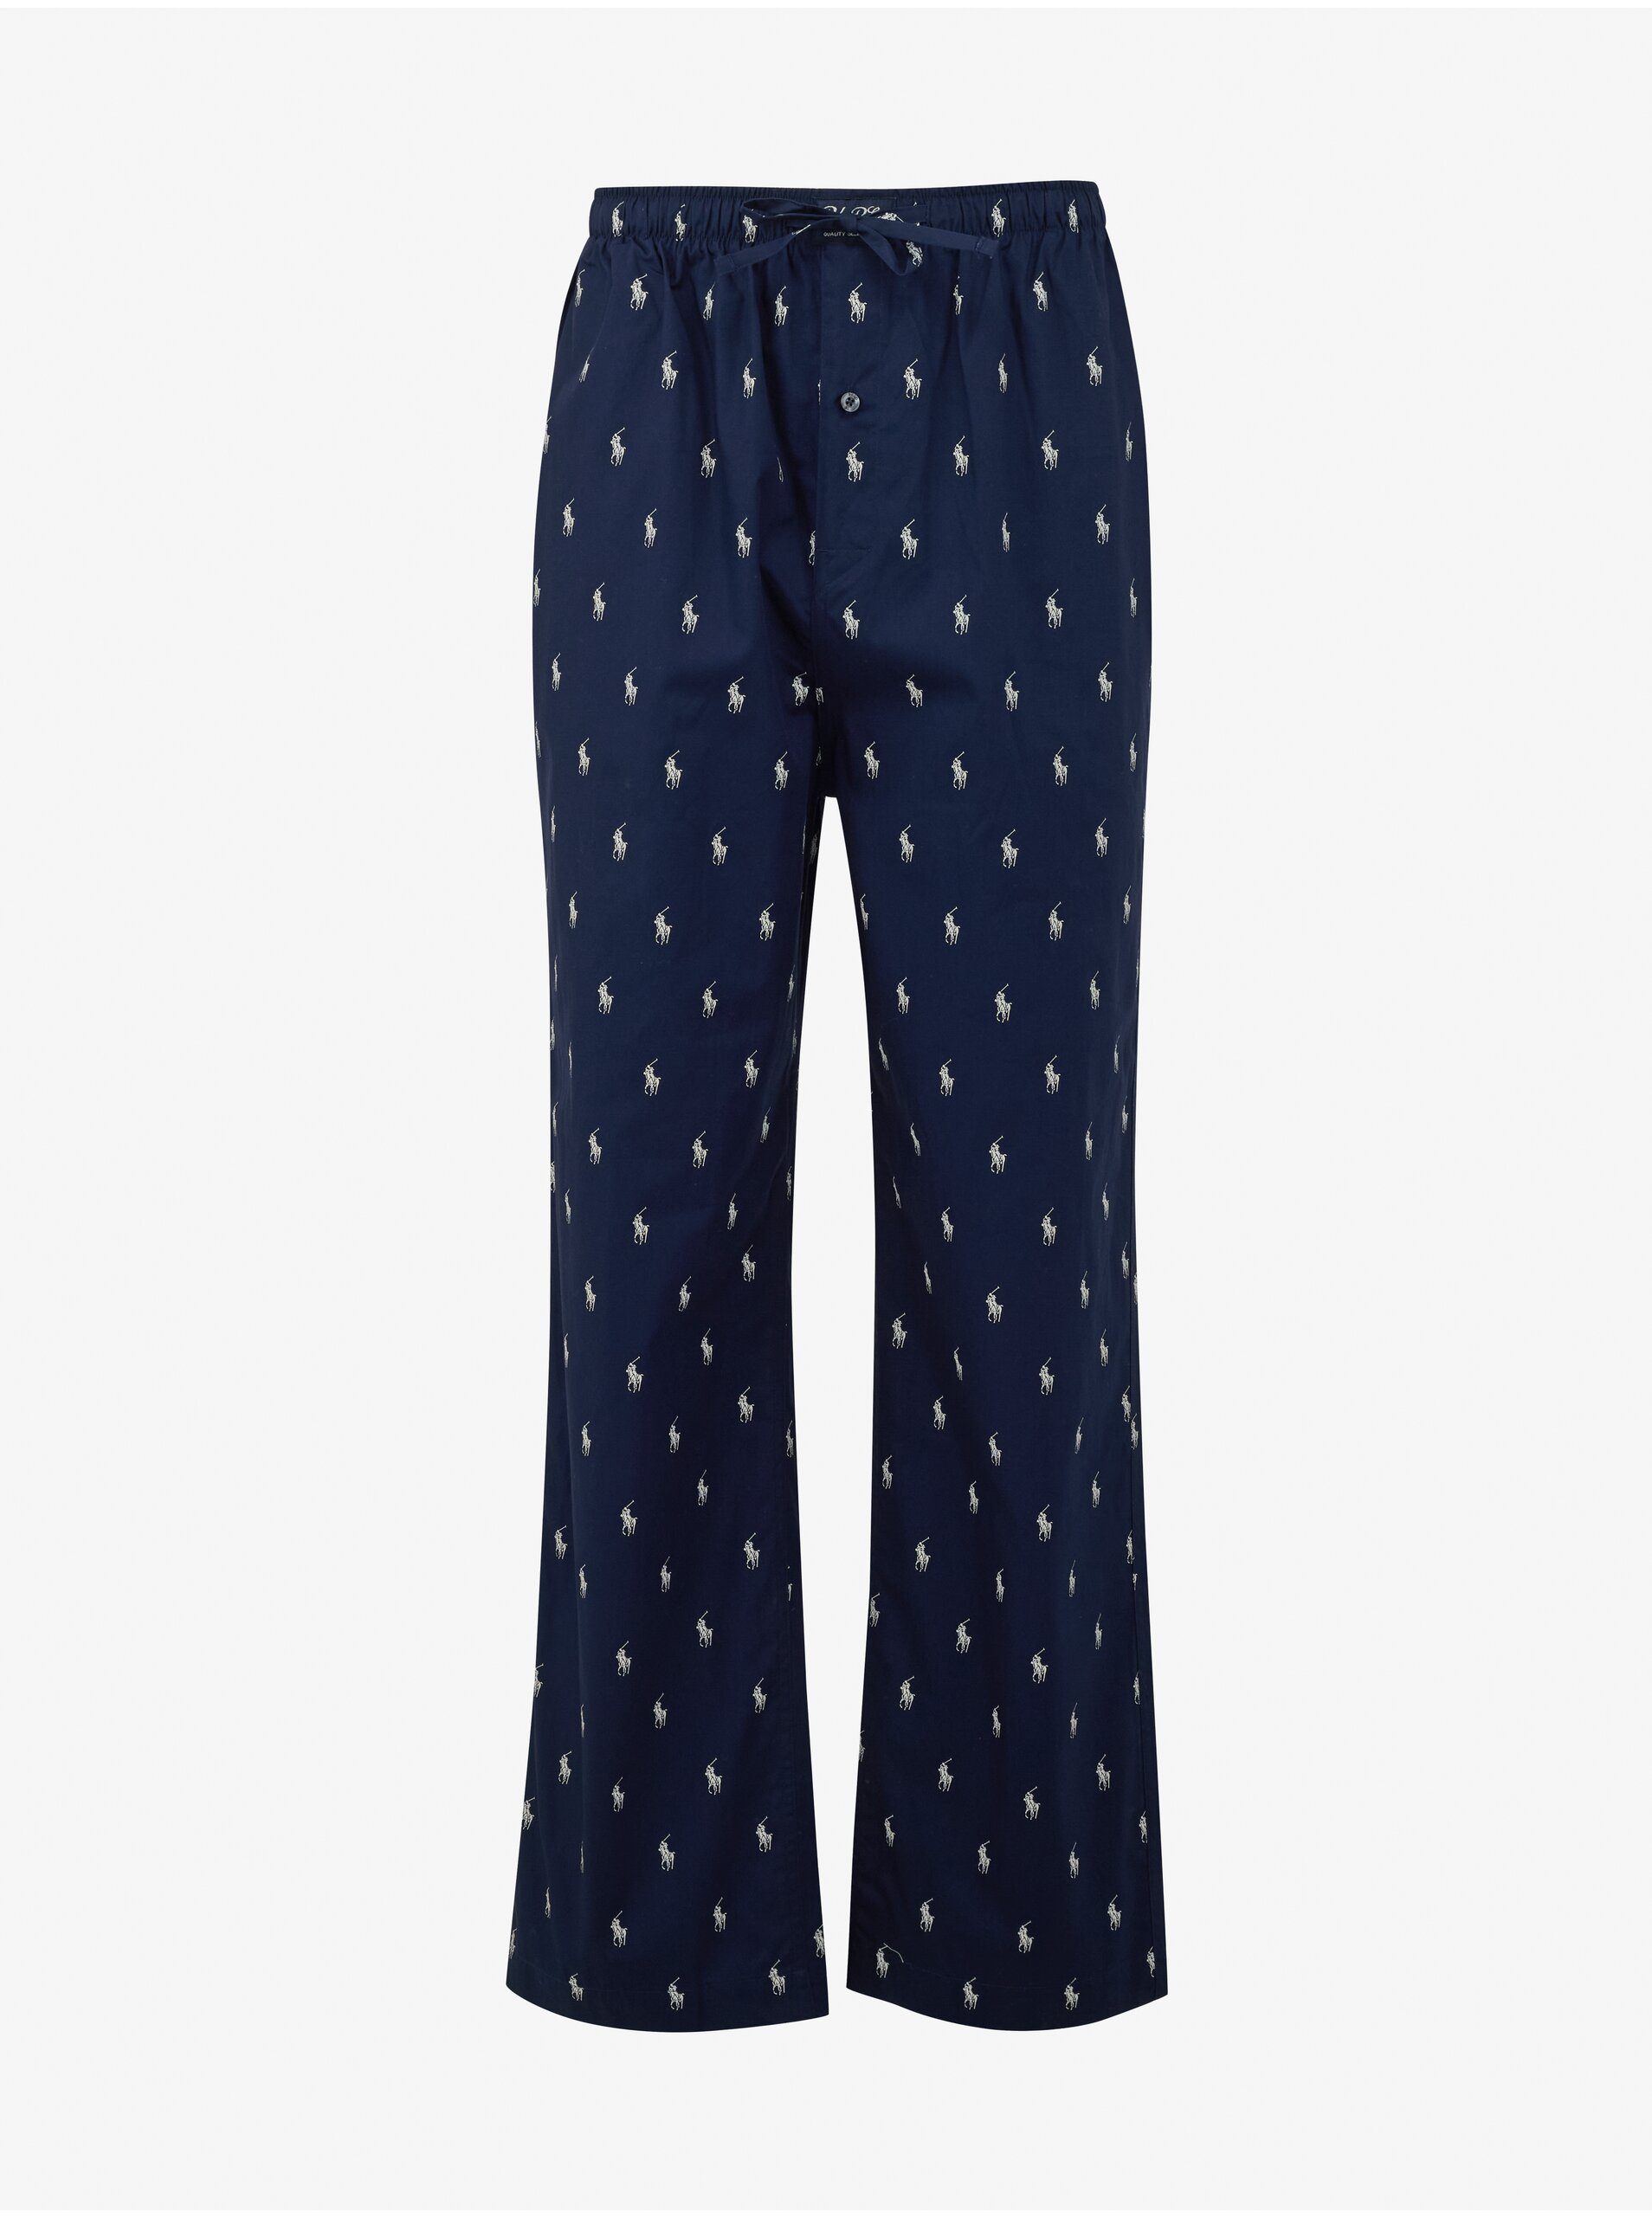 Lacno Tmavomodré pánske vzorované pyžamové nohavice Ralph Lauren